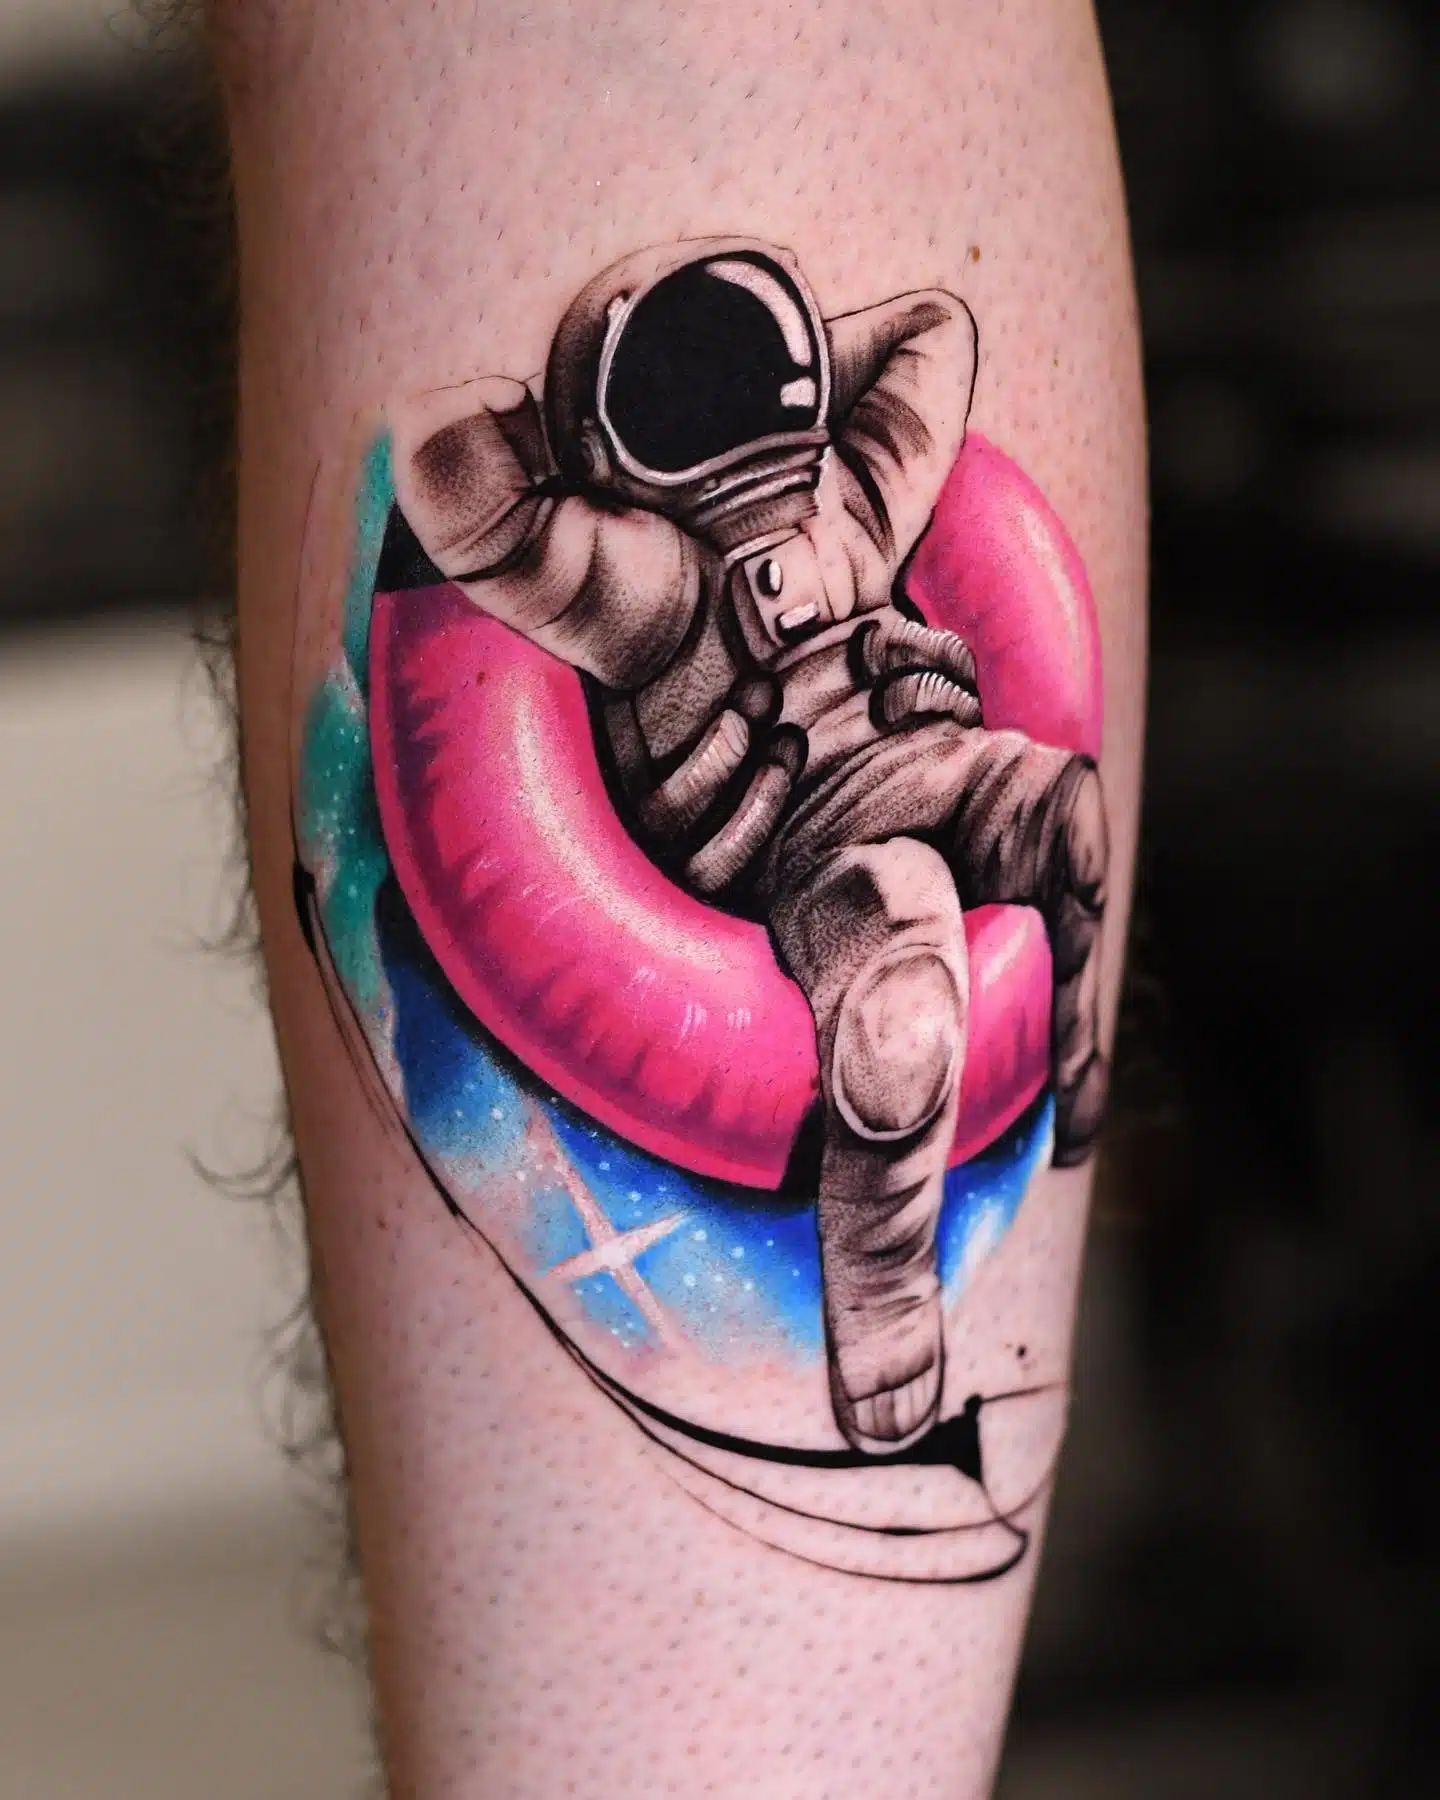 xpost from rtattoos  My geometric astronaut tattoo by Murrt  Philadelphia  rpics